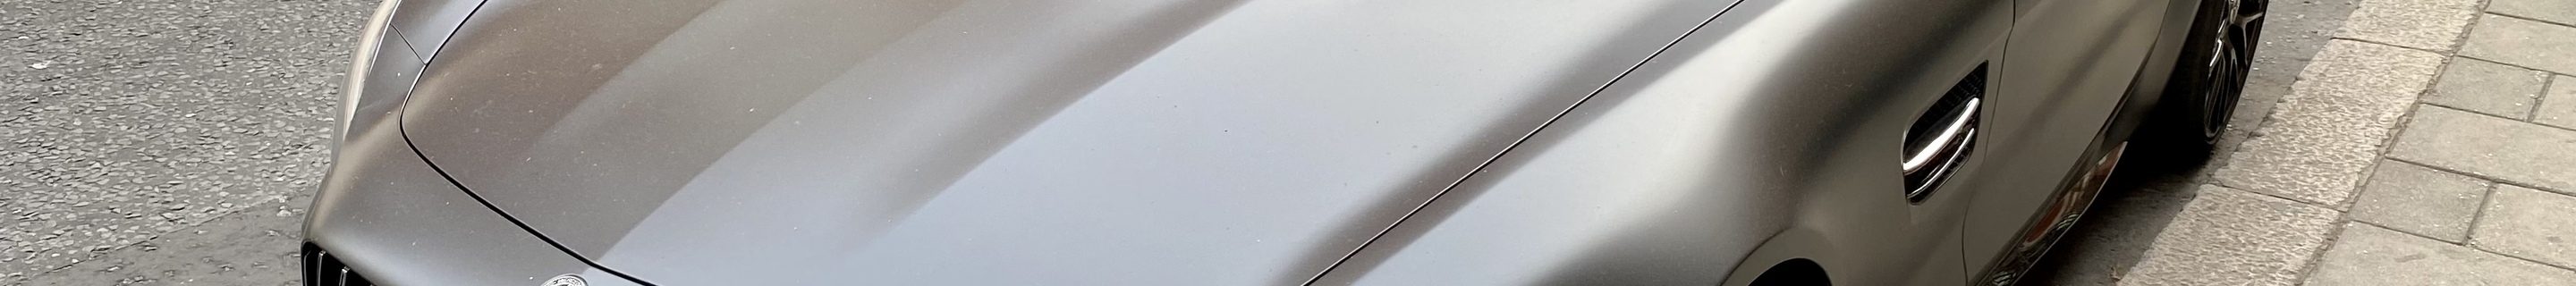 Mercedes-AMG GT C Edition 50 C190 2017